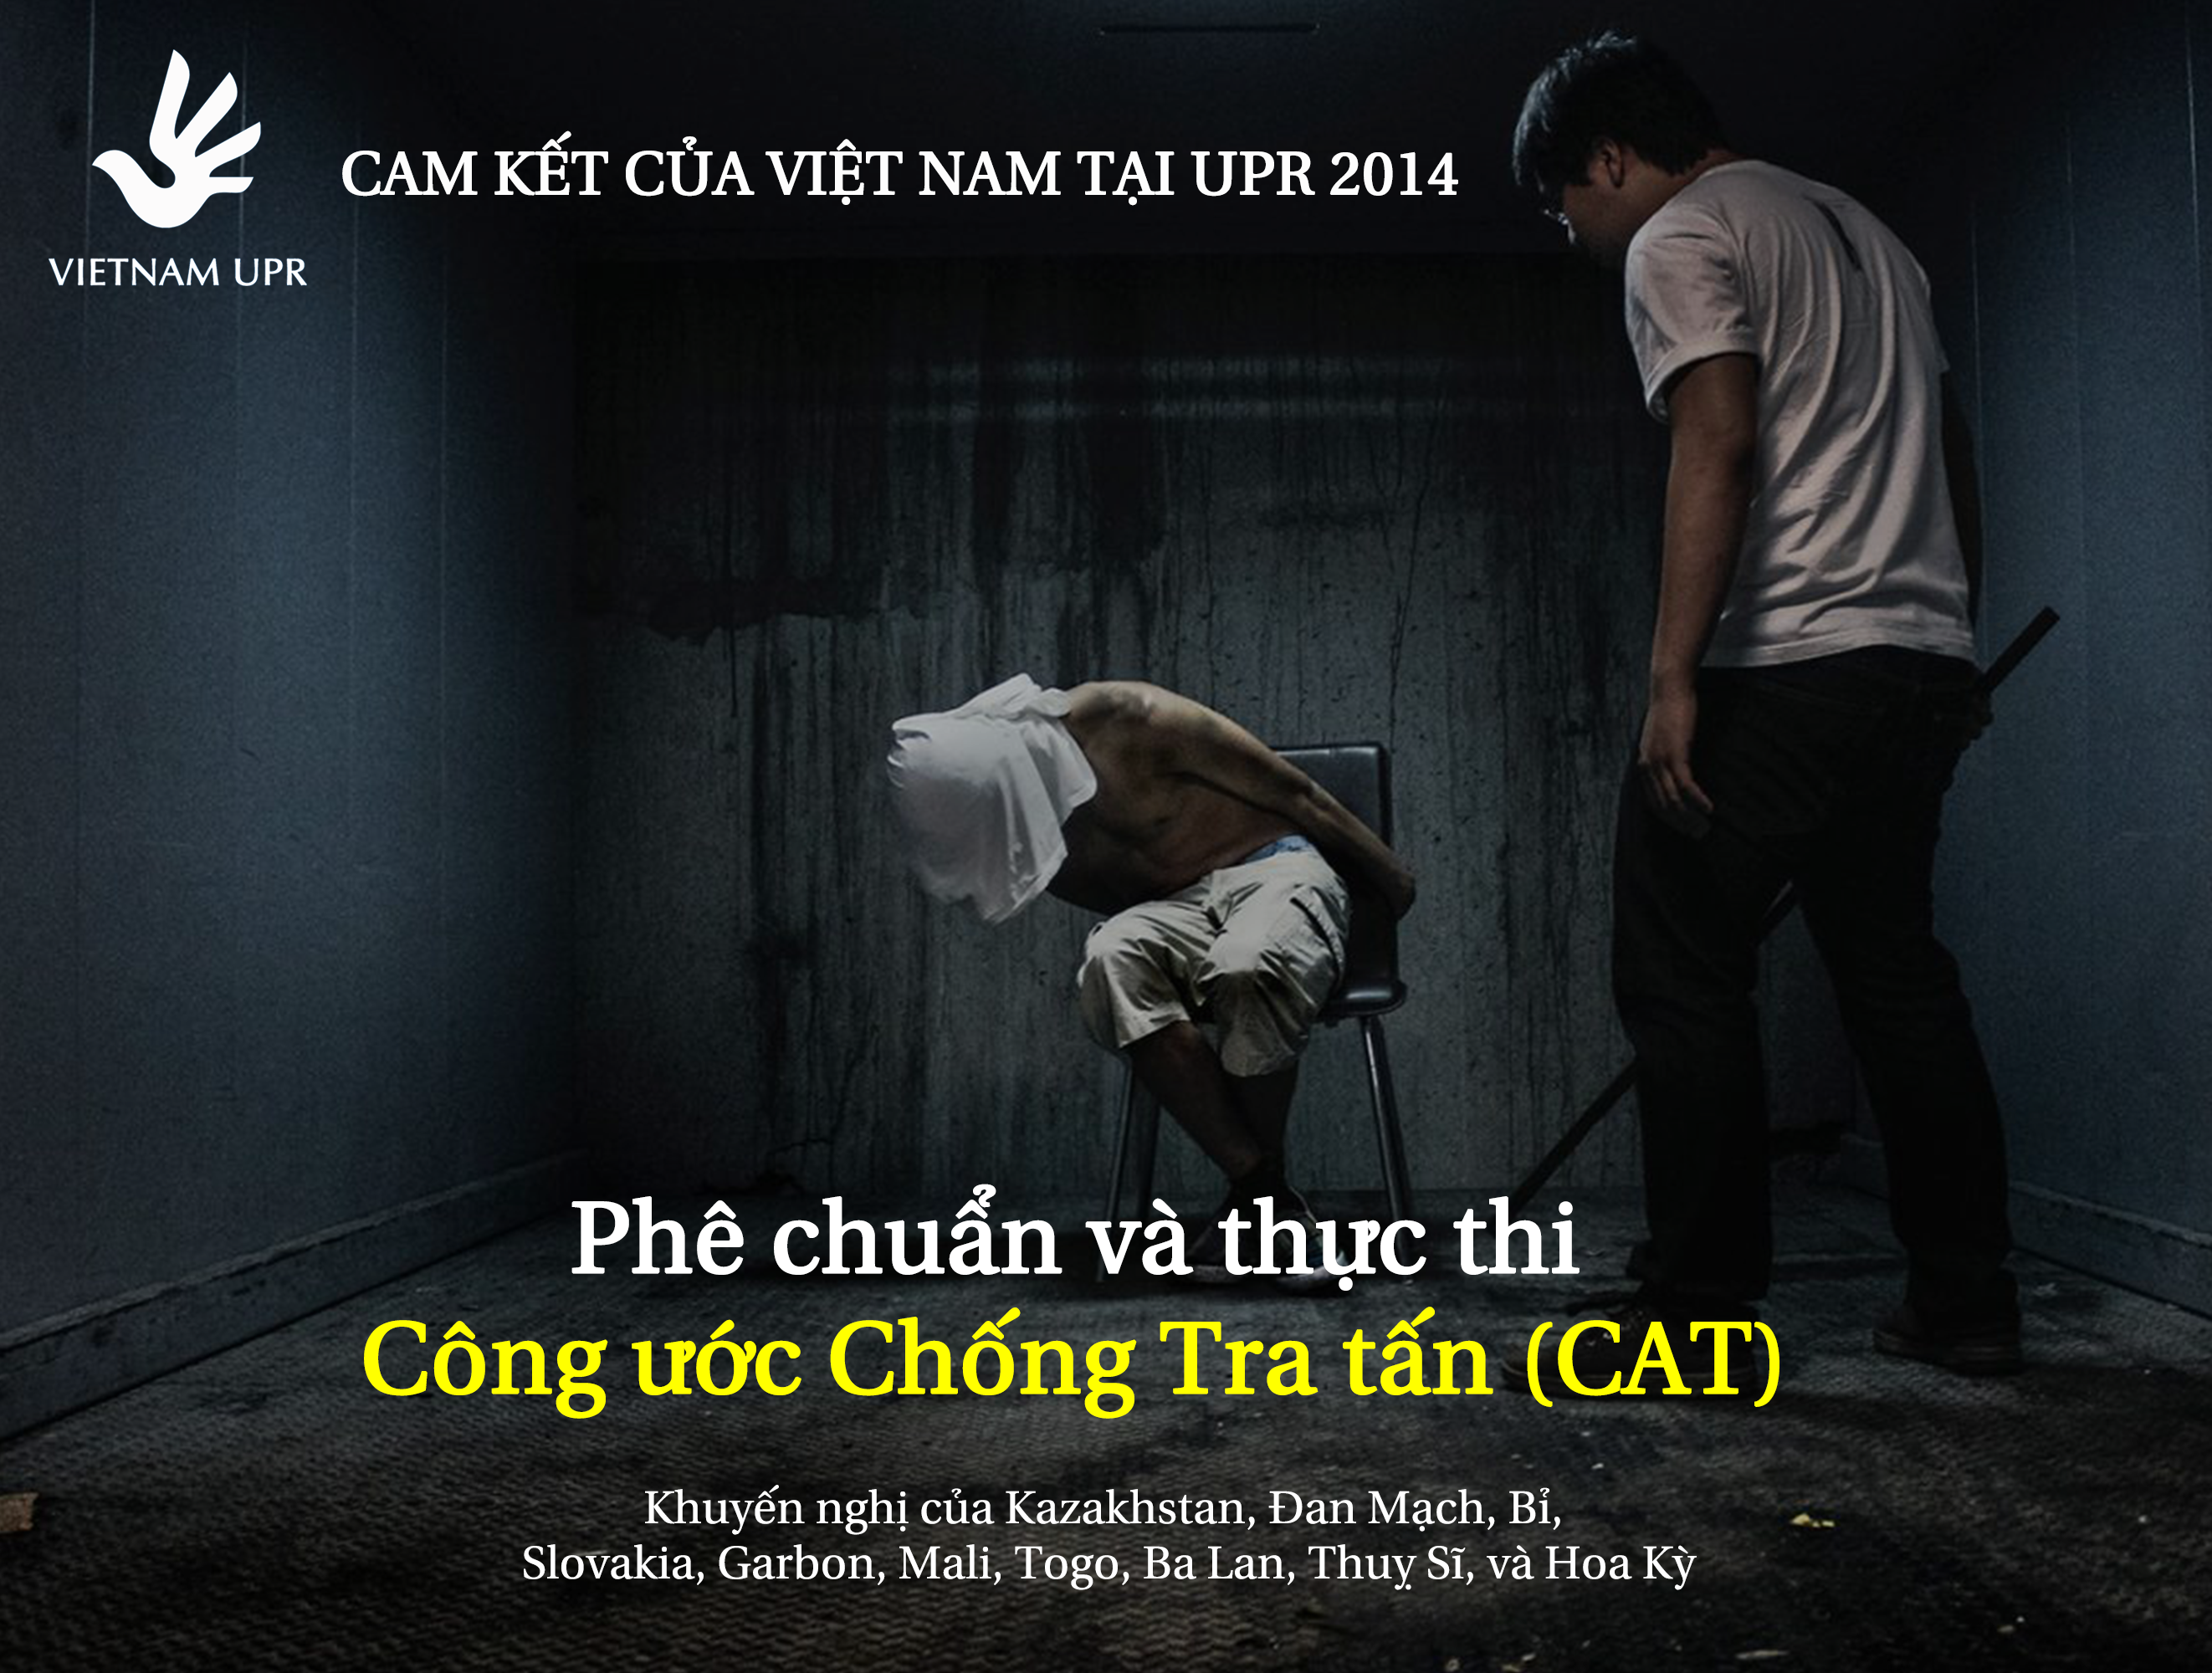  Bạn có biết Việt Nam đã cam kết phê chuẩn và thực thi Công ước chống tra tấn tại UPR 2014 -UPR_KN_4